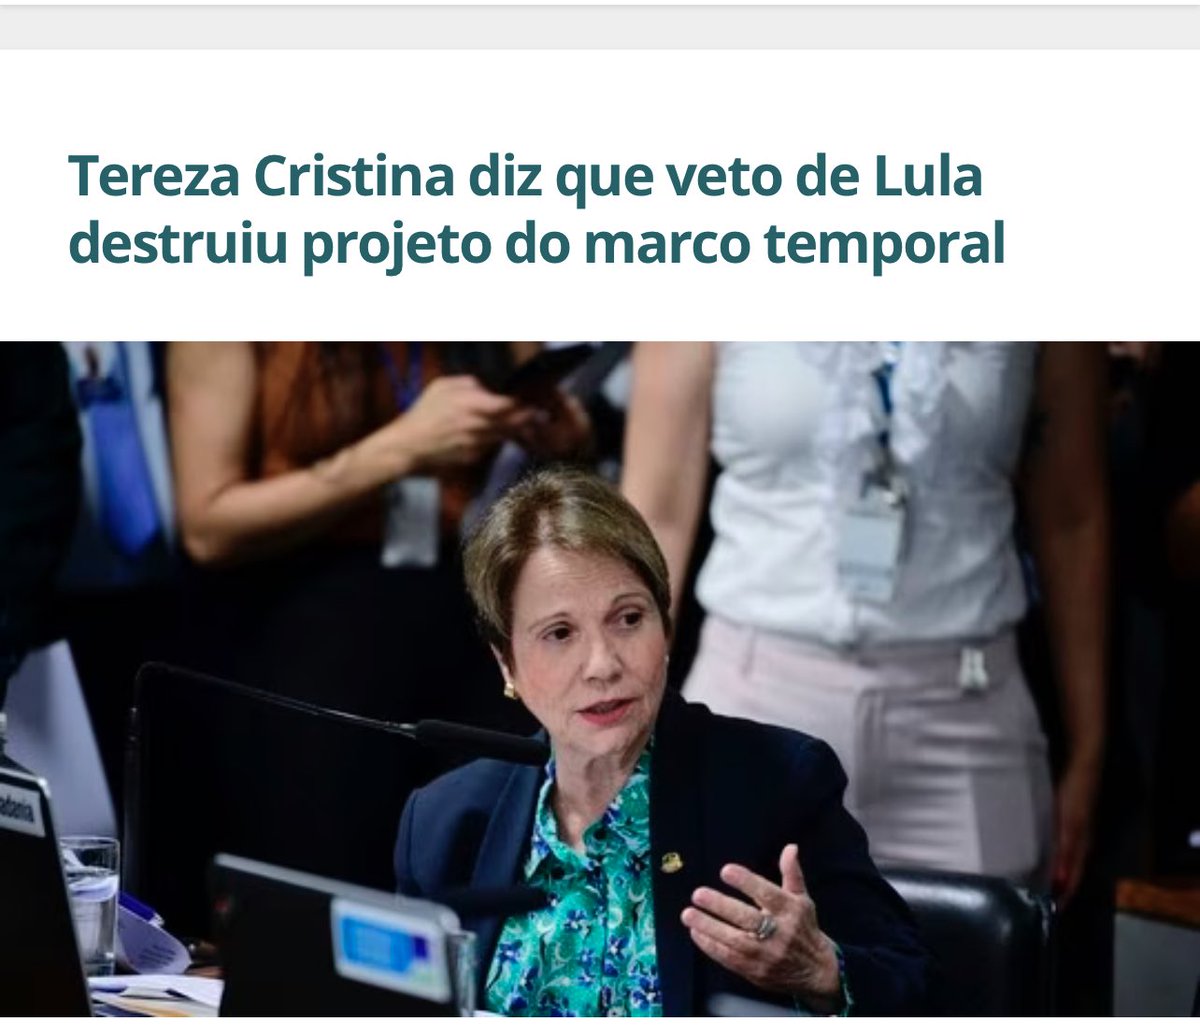 Vamos derrubar o veto do Lula!! Temos que defender o direito à propriedade e a segurança dos investimentos do Agronegócio!